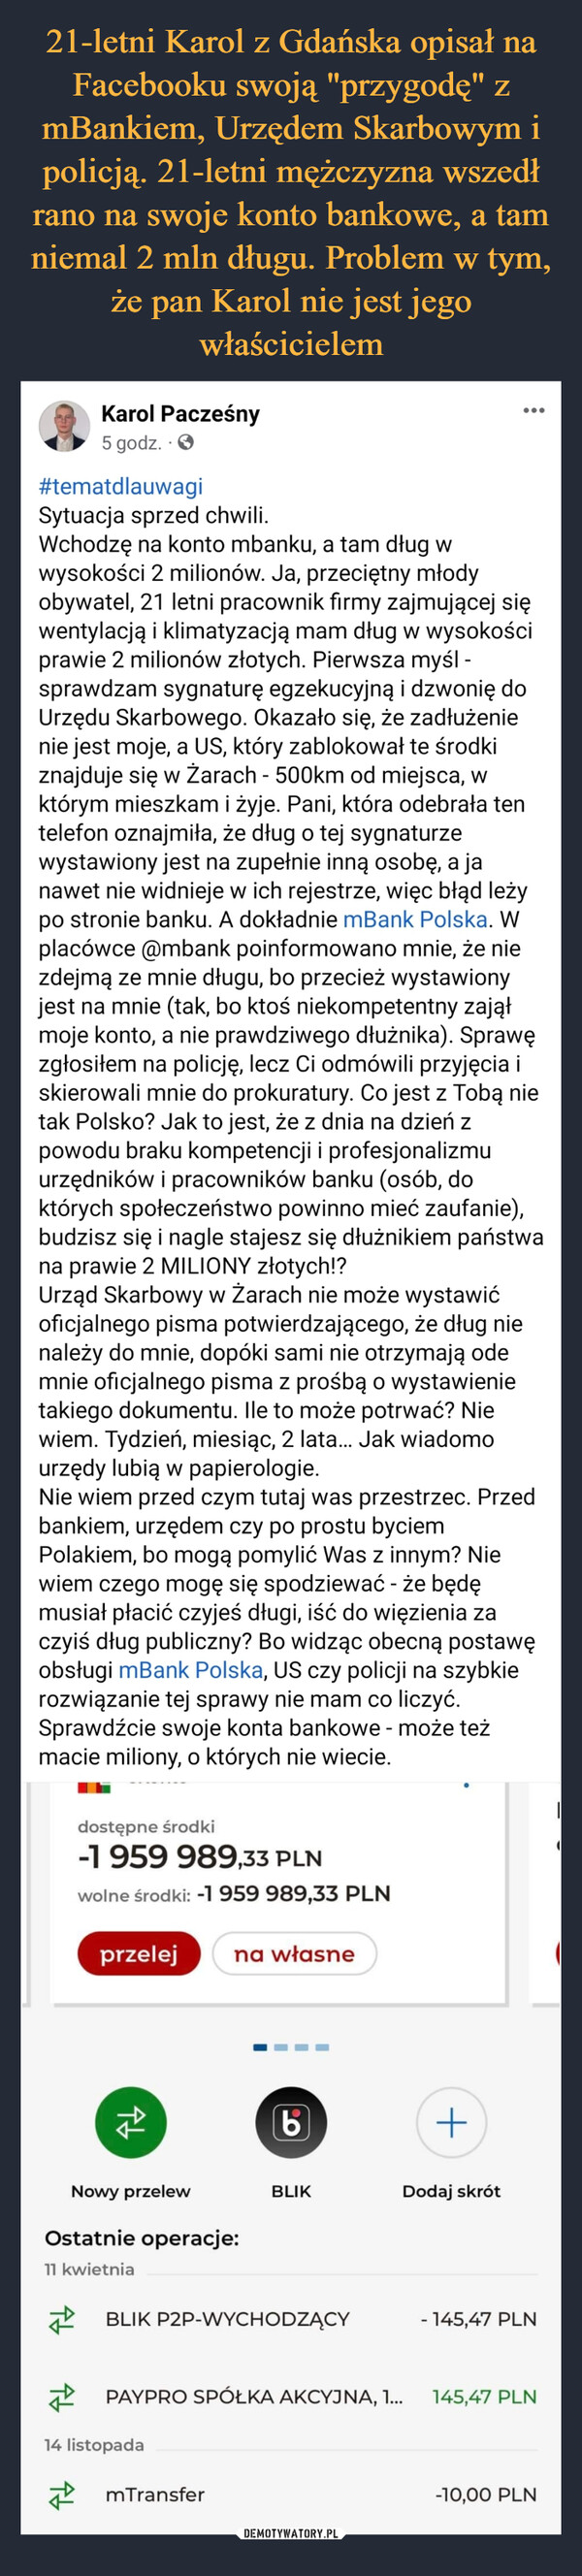 21-letni Karol z Gdańska opisał na Facebooku swoją "przygodę" z mBankiem, Urzędem Skarbowym i policją. 21-letni mężczyzna wszedł rano na swoje konto bankowe, a tam niemal 2 mln długu. Problem w tym, że pan Karol nie jest jego właścicielem